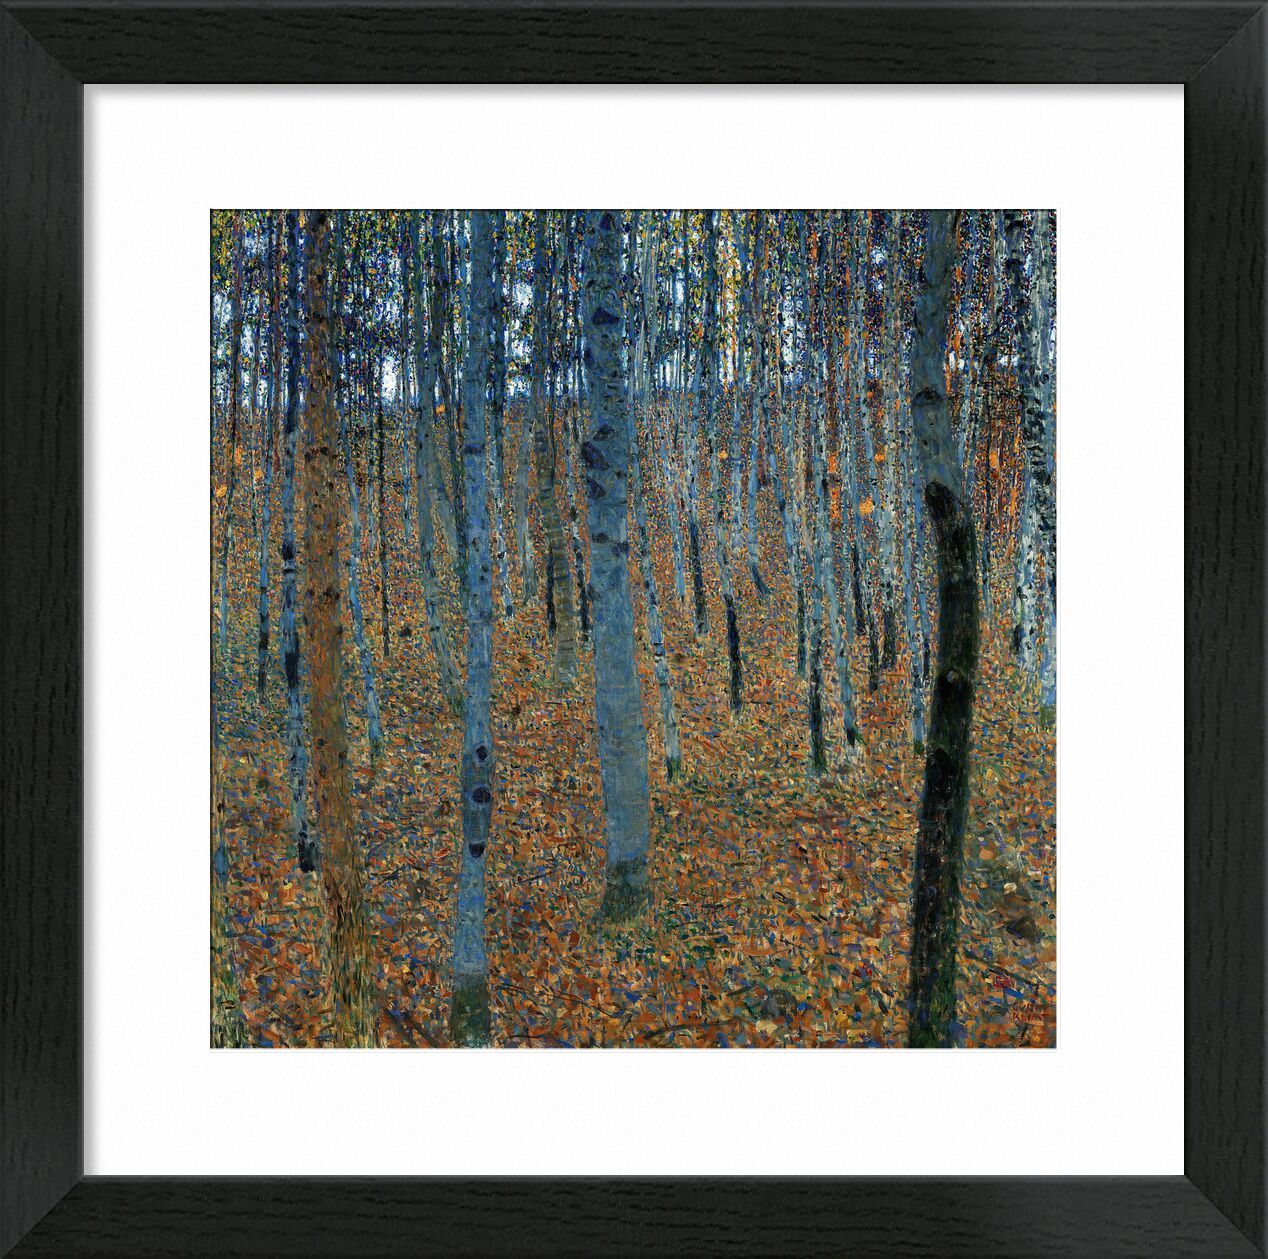 Beech Forest - Gustav Klimt desde Bellas artes, Prodi Art, bosque, otoño, hojas, árboles, KLIMT, art nouveau, abedul